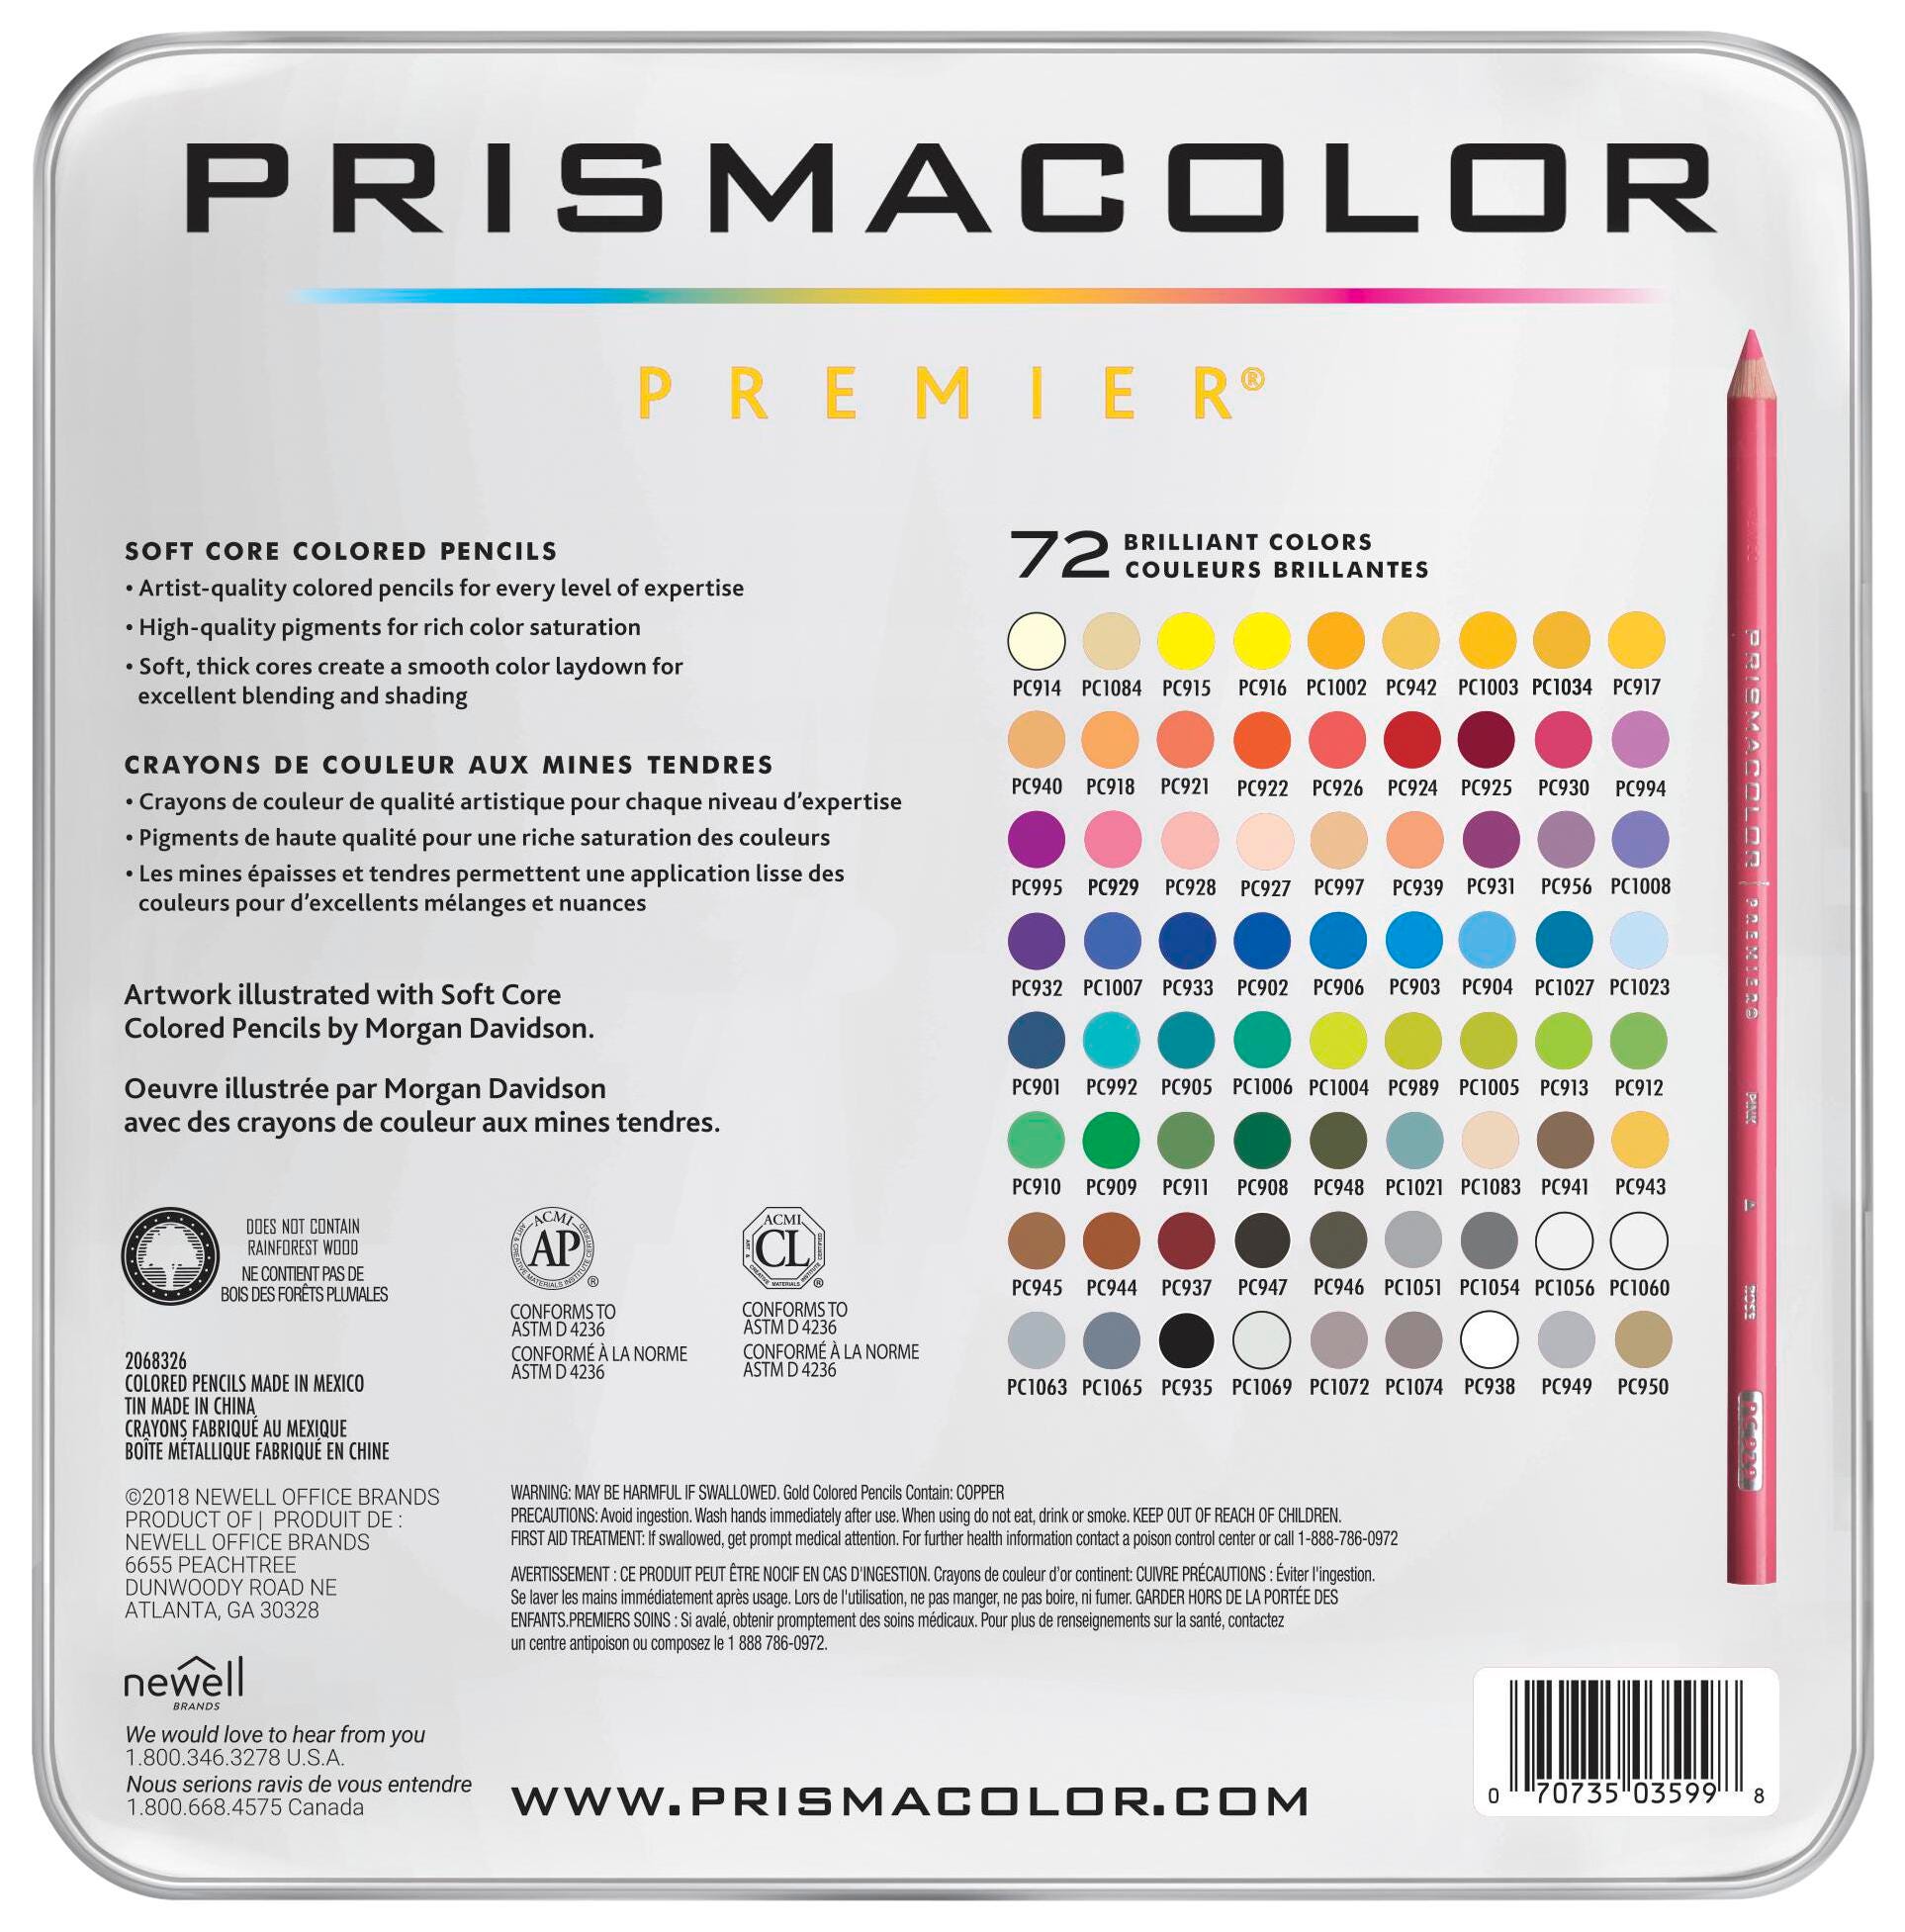 Prismacolor Premier Soft Core Colored Pencils, Assorted Colors, Set of 72 - image 3 of 5